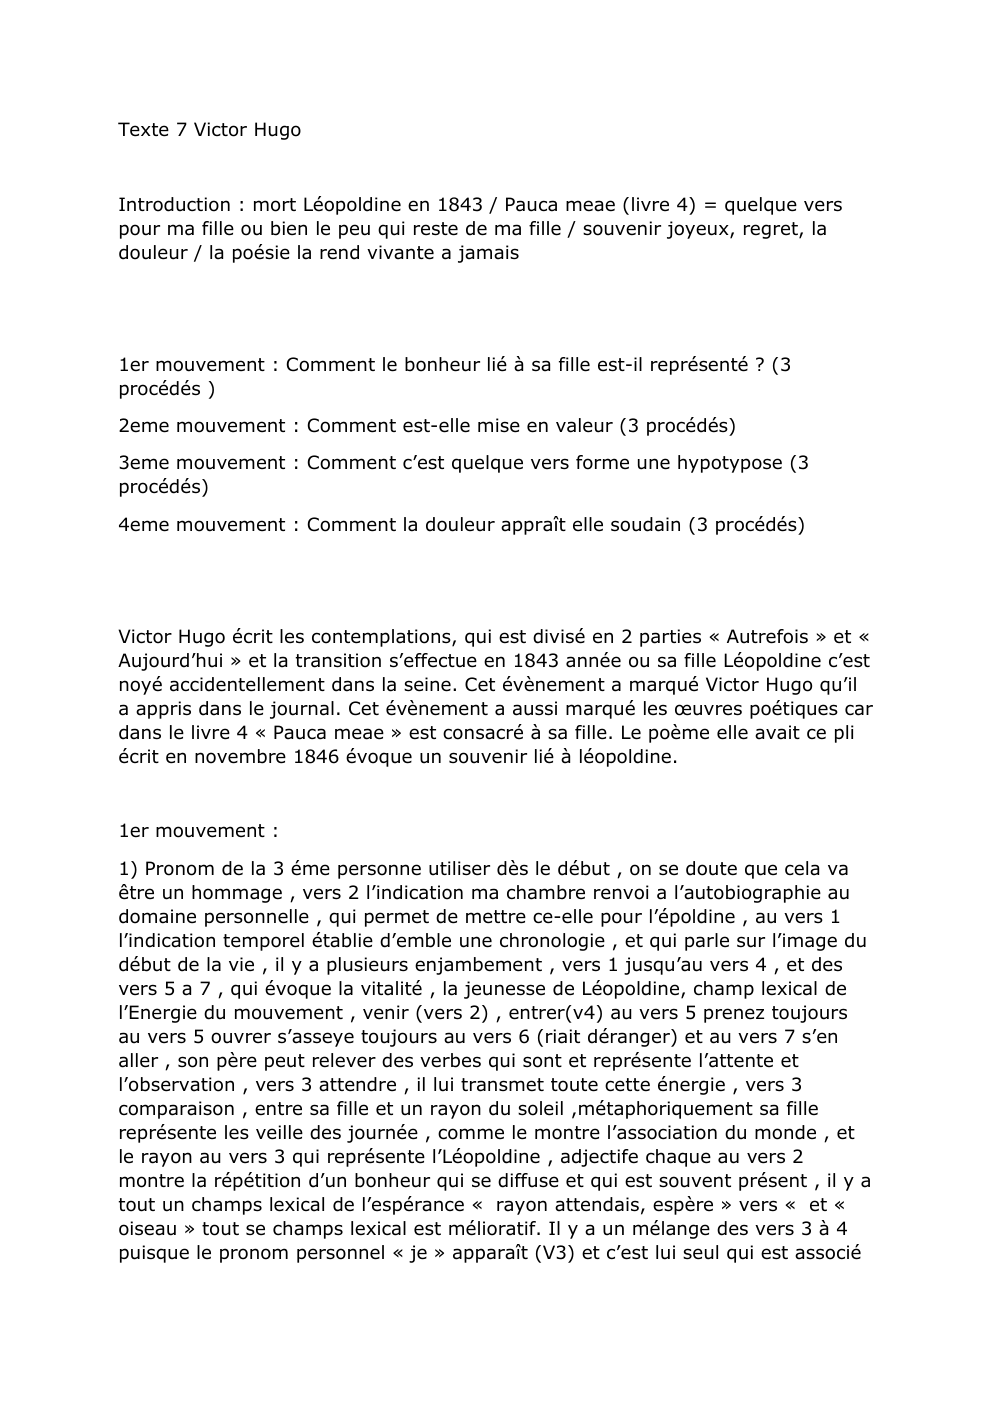 Prévisualisation du document lecture linéaire: Victor Hugo Pauca meae (livre 4)